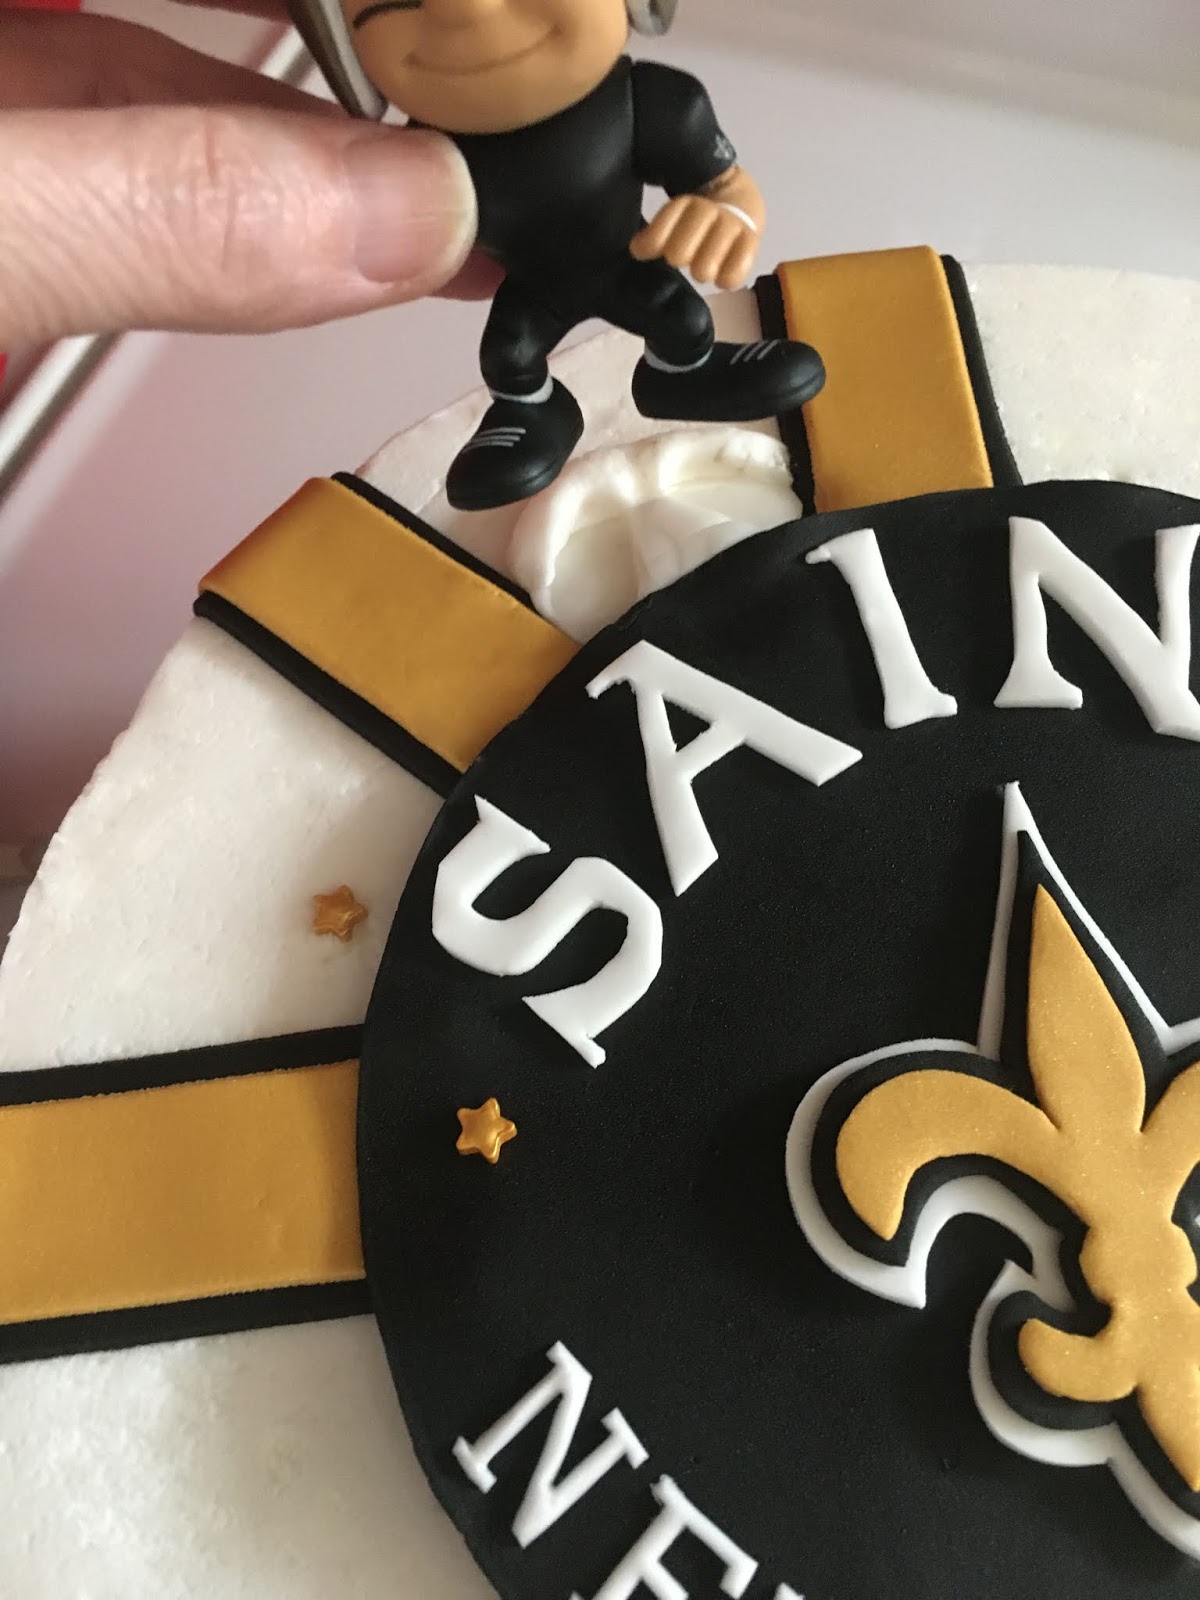 New Orleans Saints Edible Image